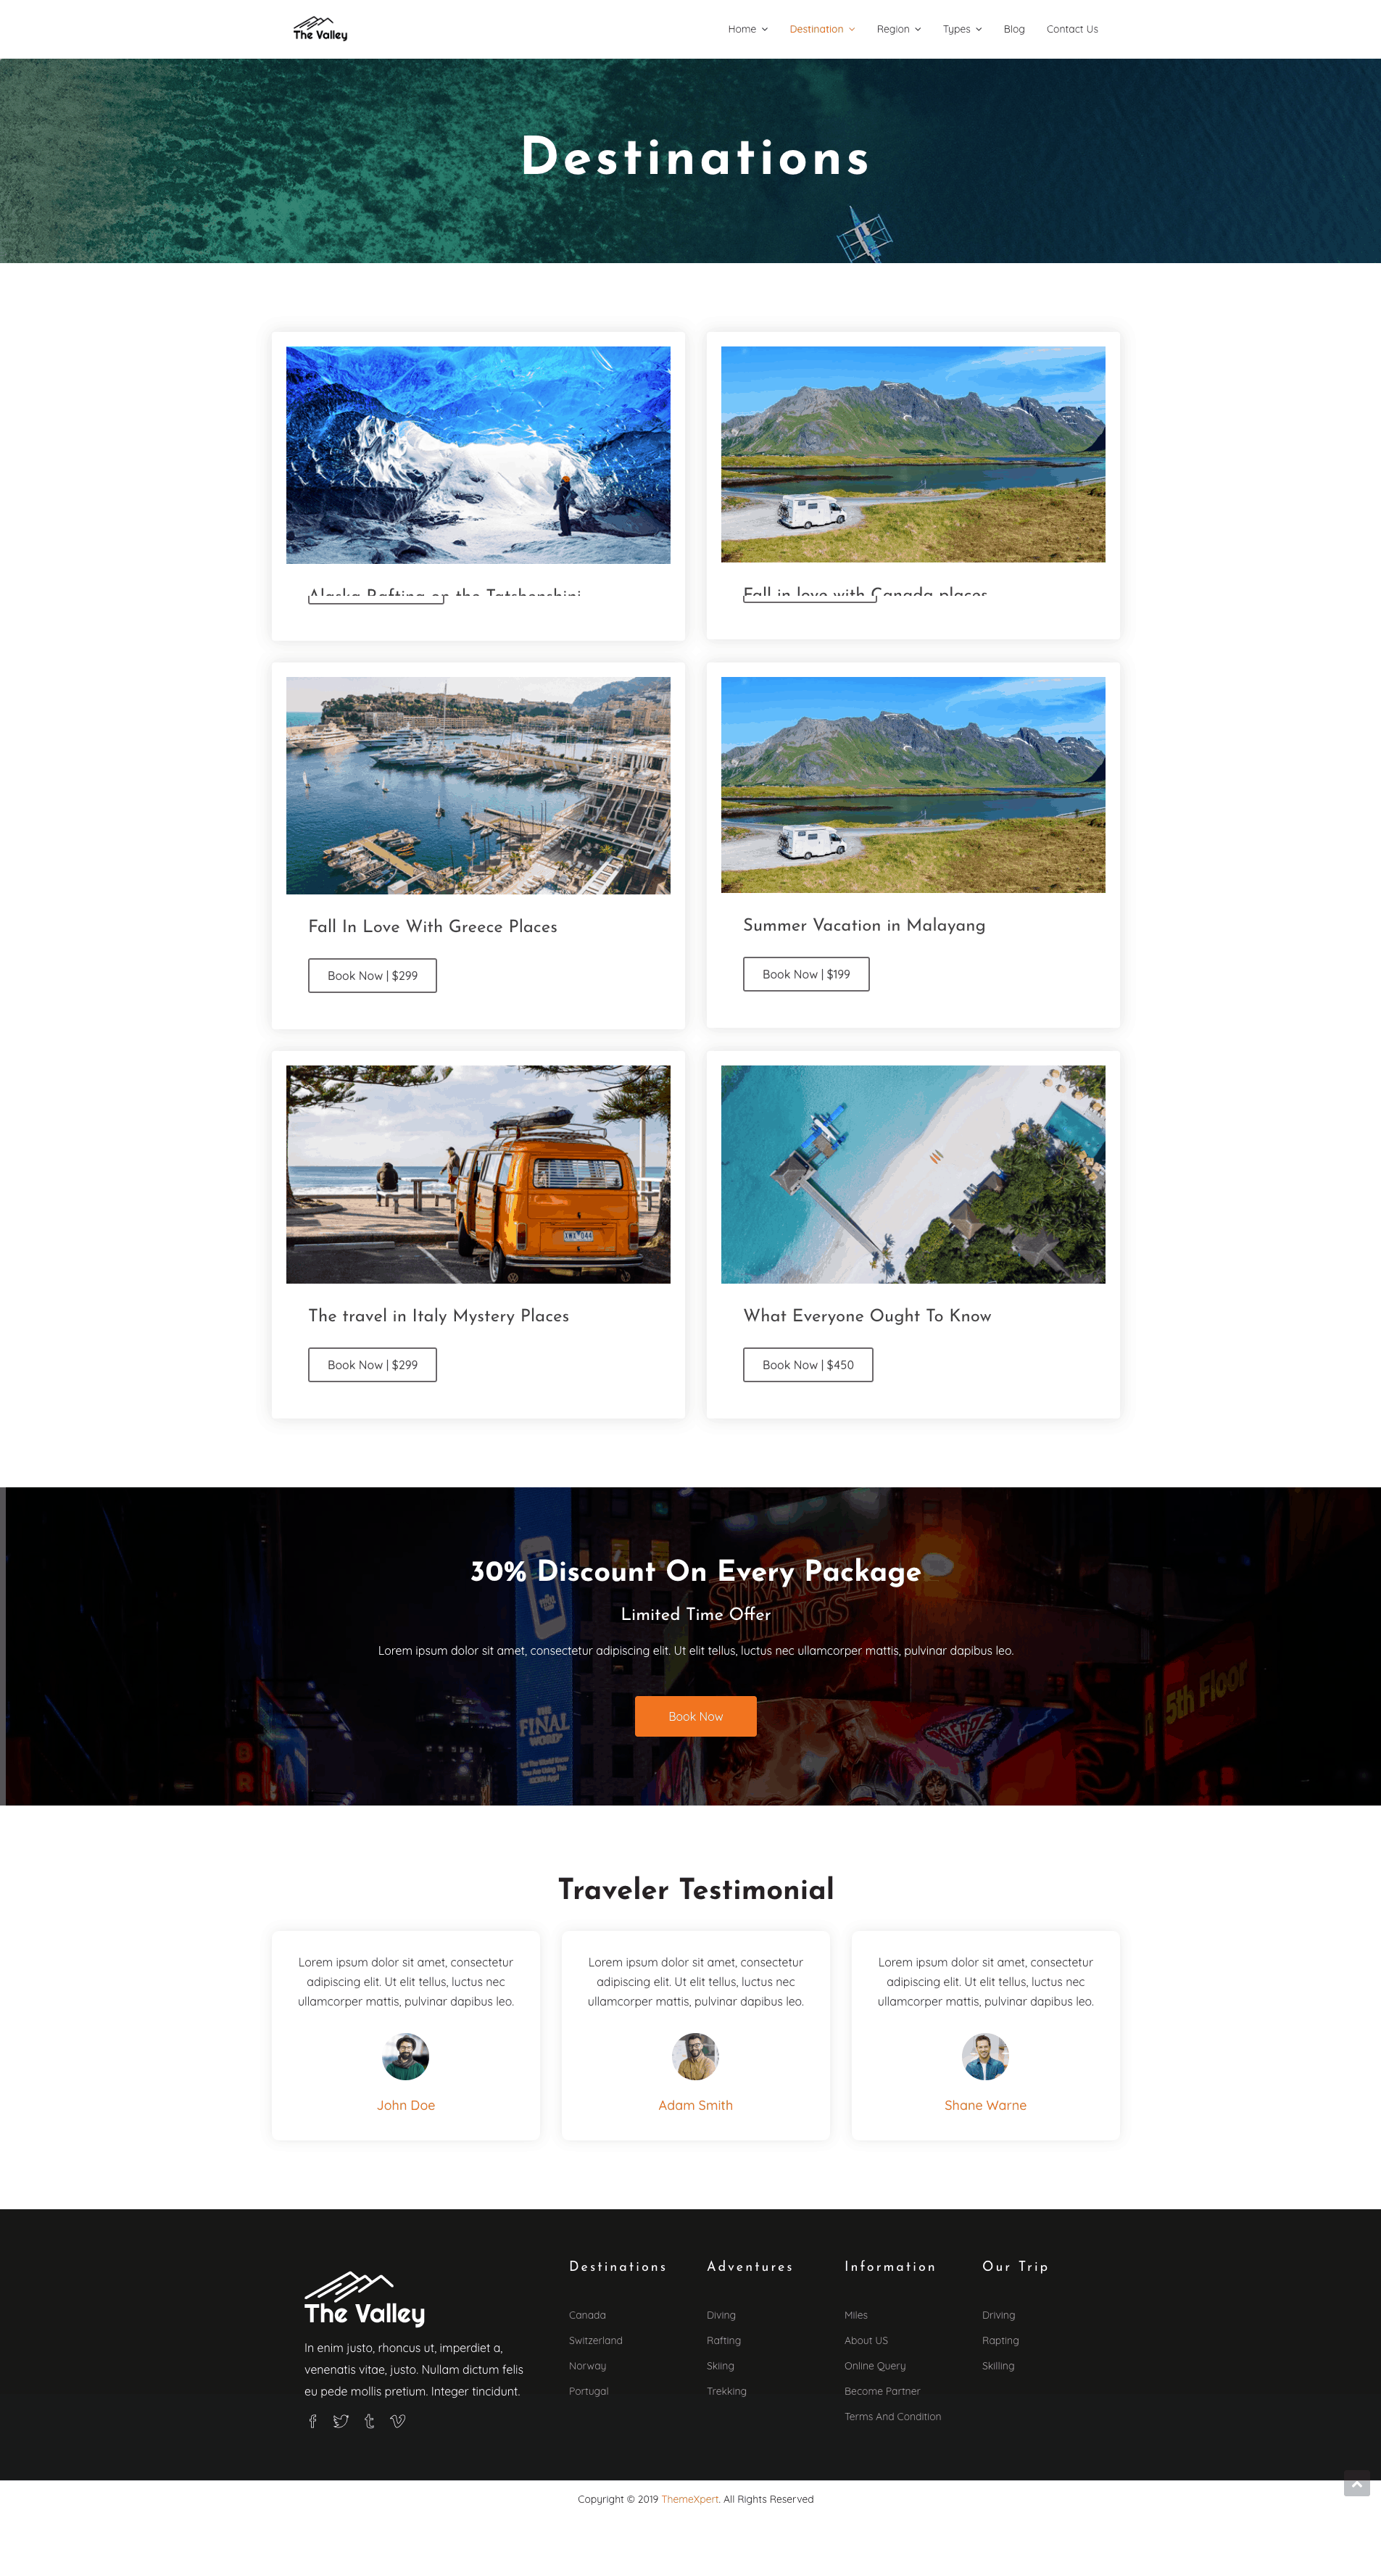 Destination Page